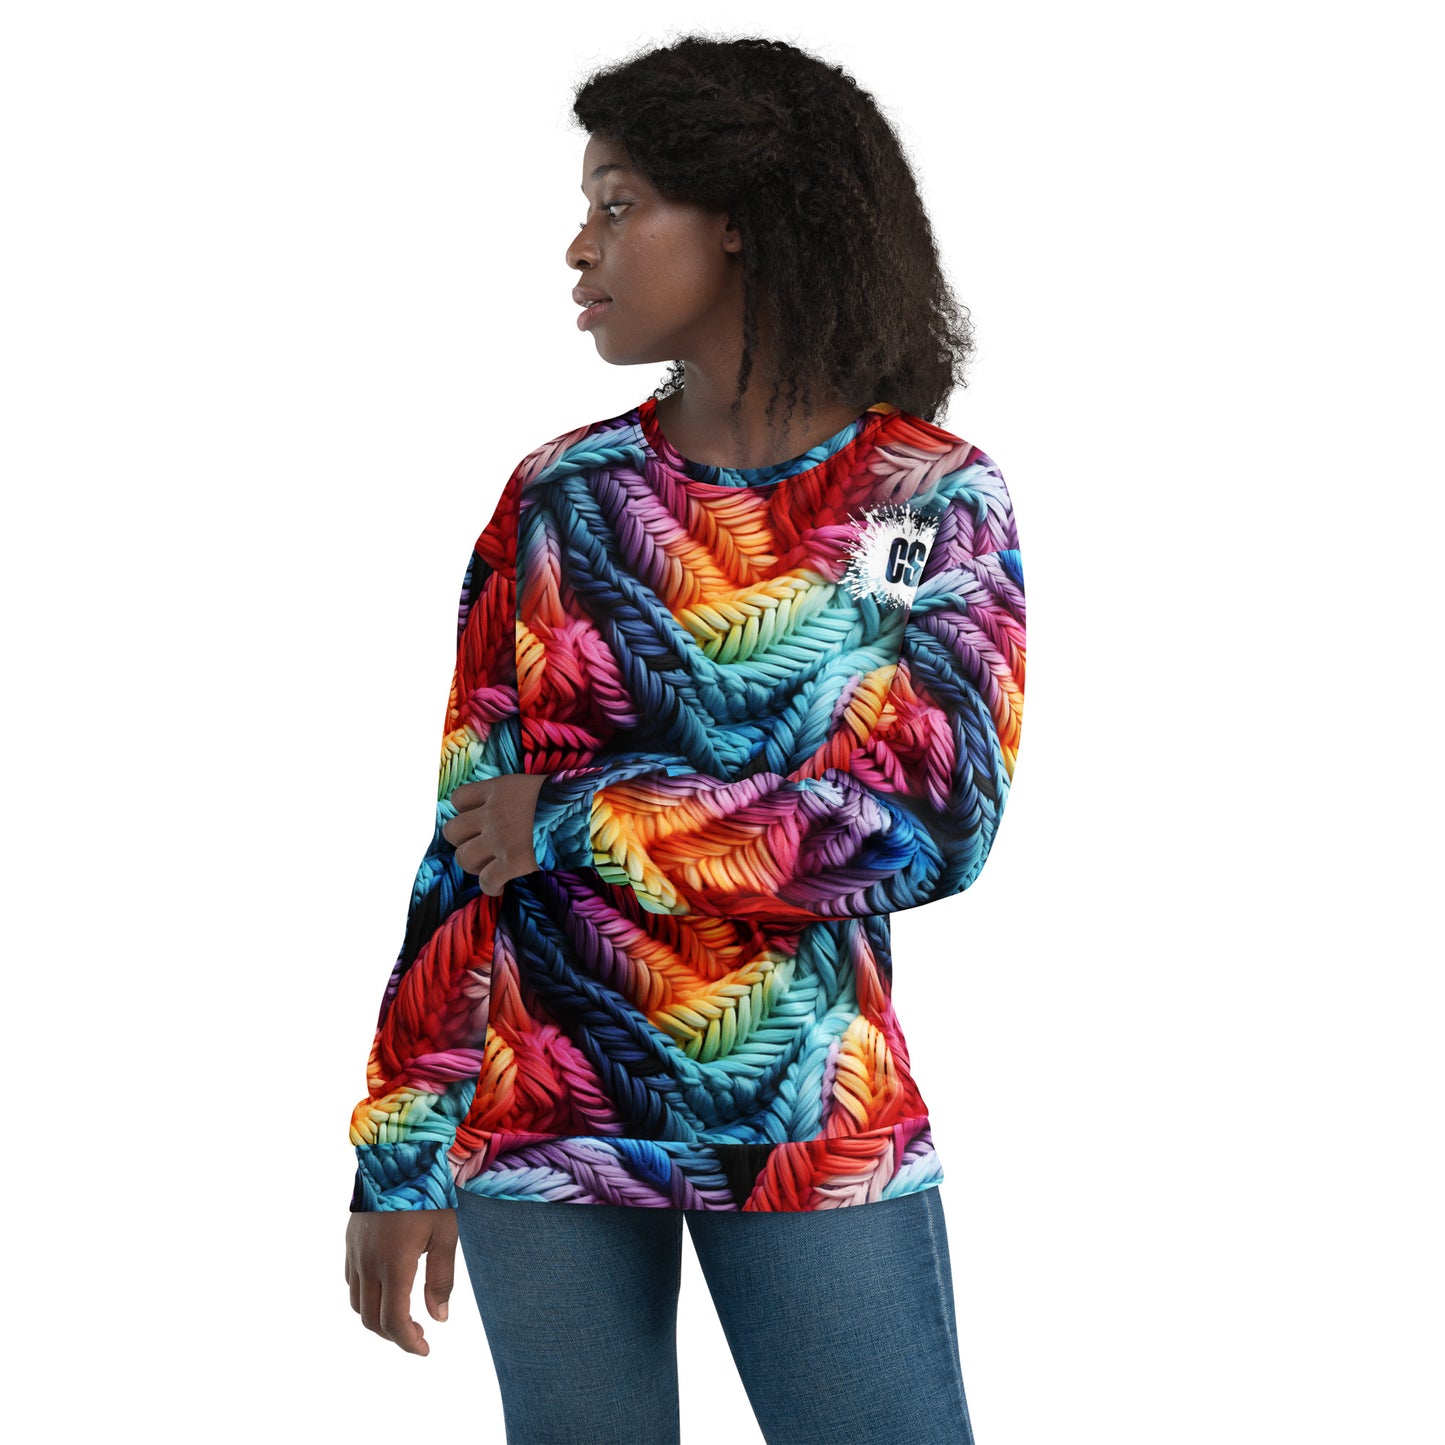 Colorful Lace Potpourri Unisex Sweatshirt